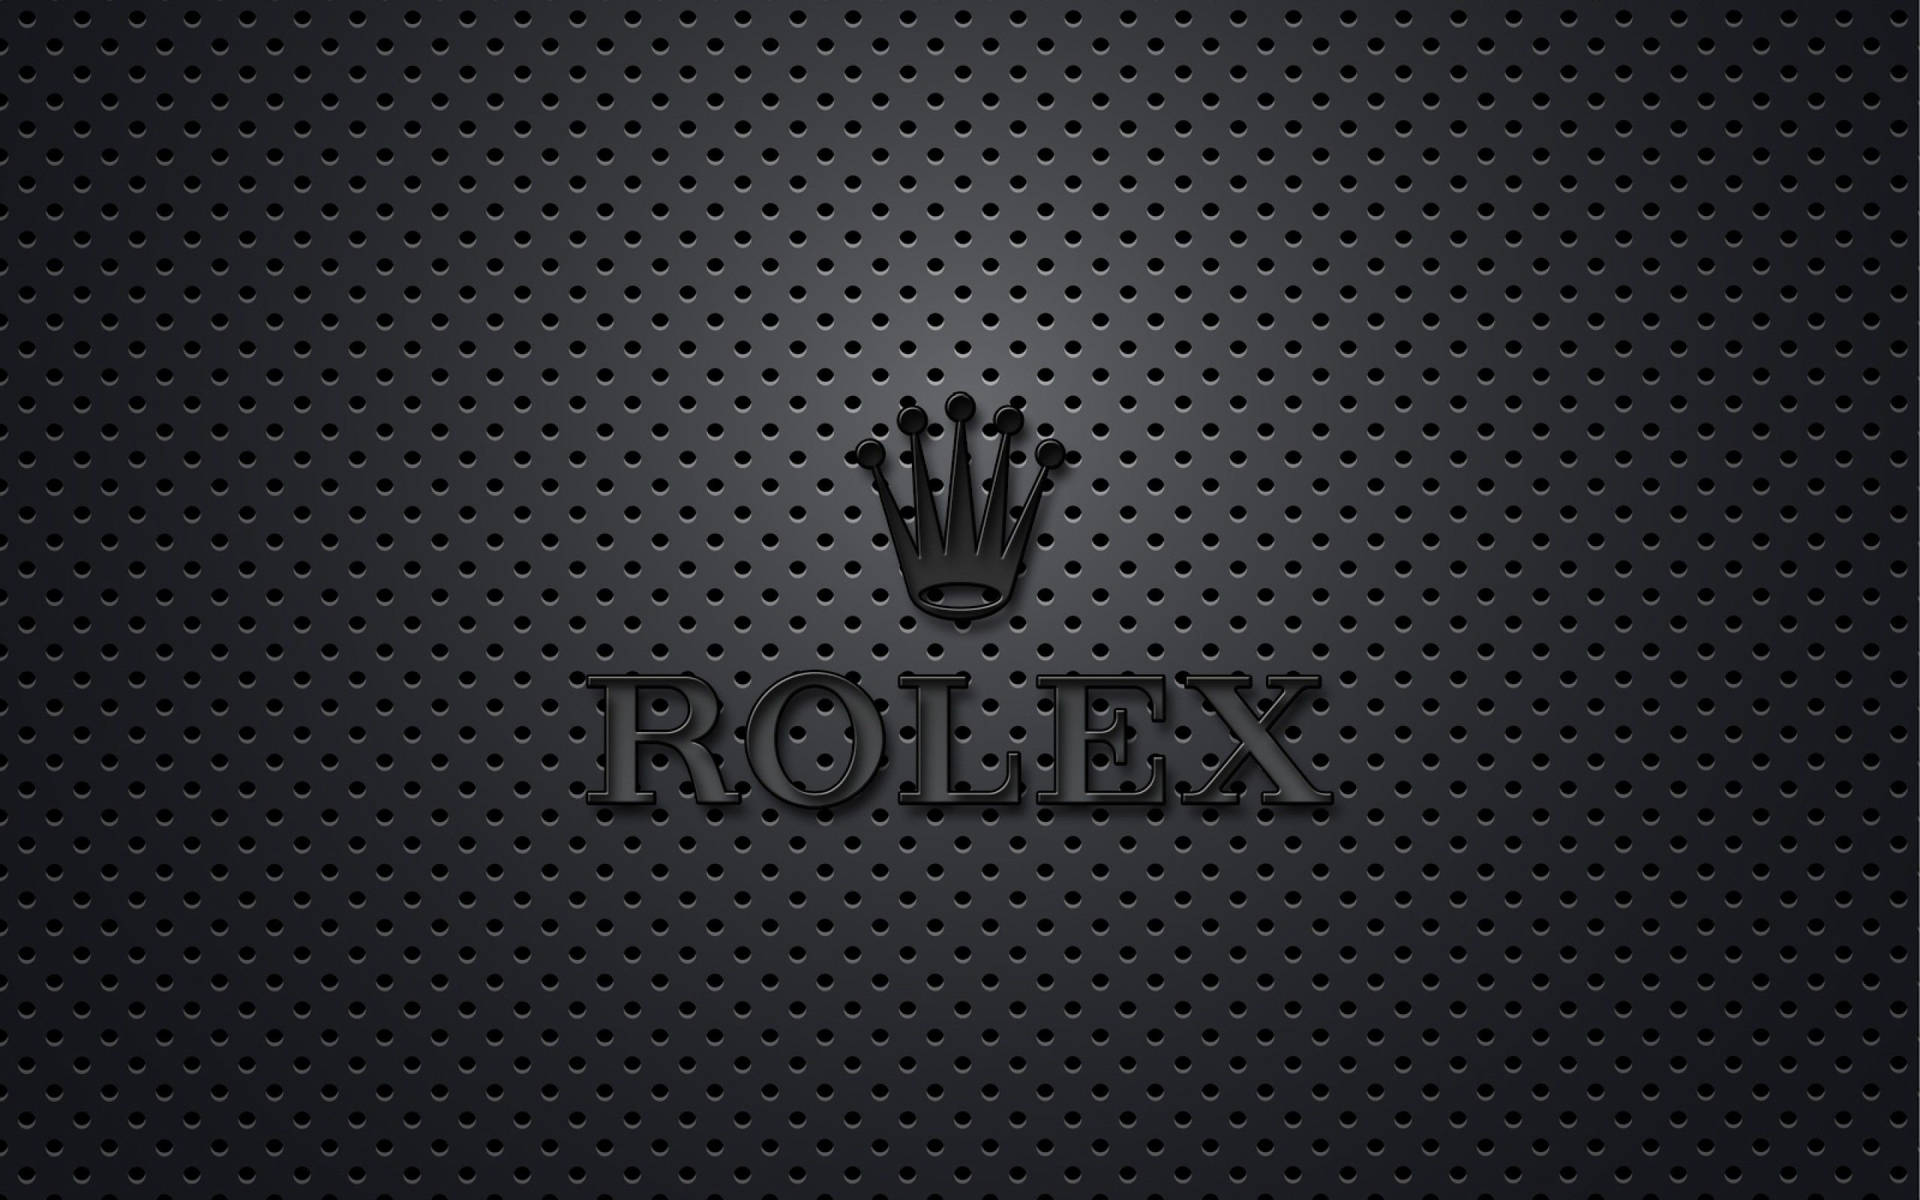 Immagini Del Logo Rolex